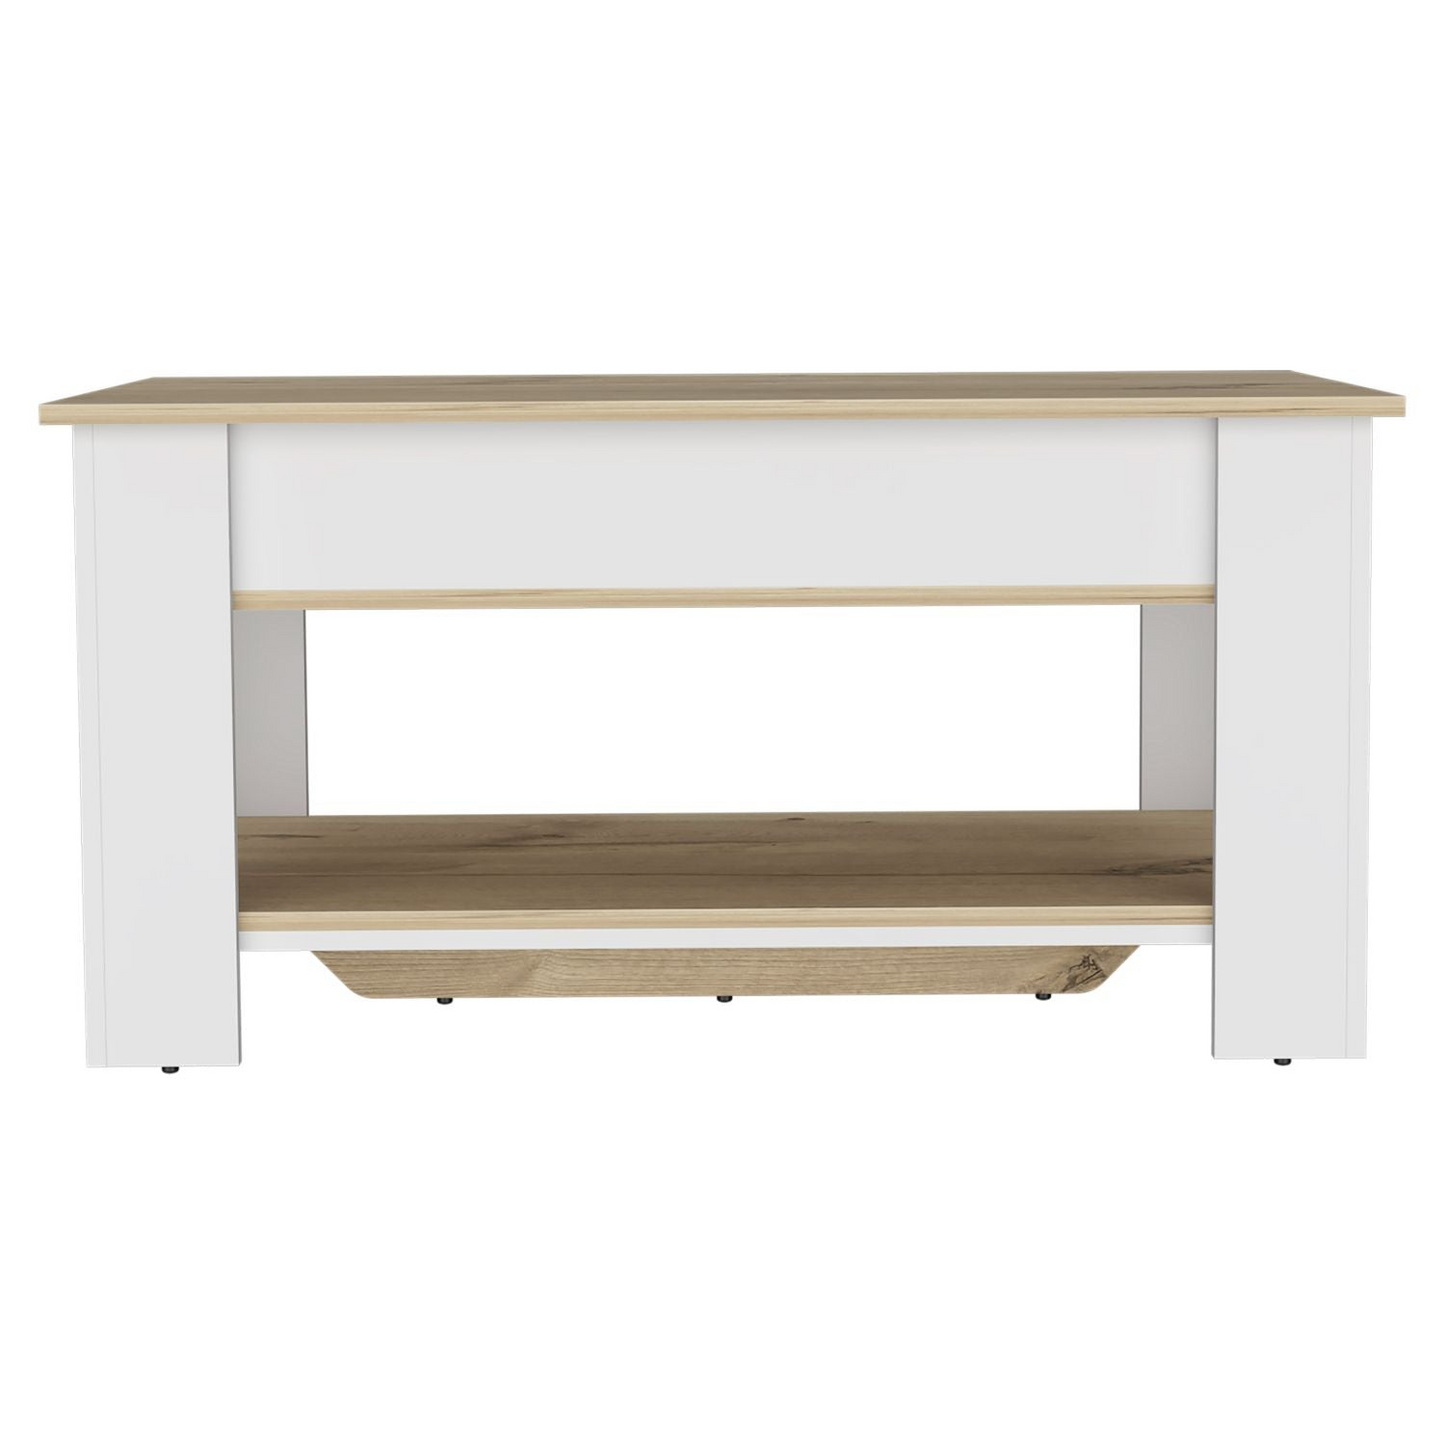 Storage Table Polgon, Extendable Table Shelf, Lower Shelf, Light Oak / White Finish